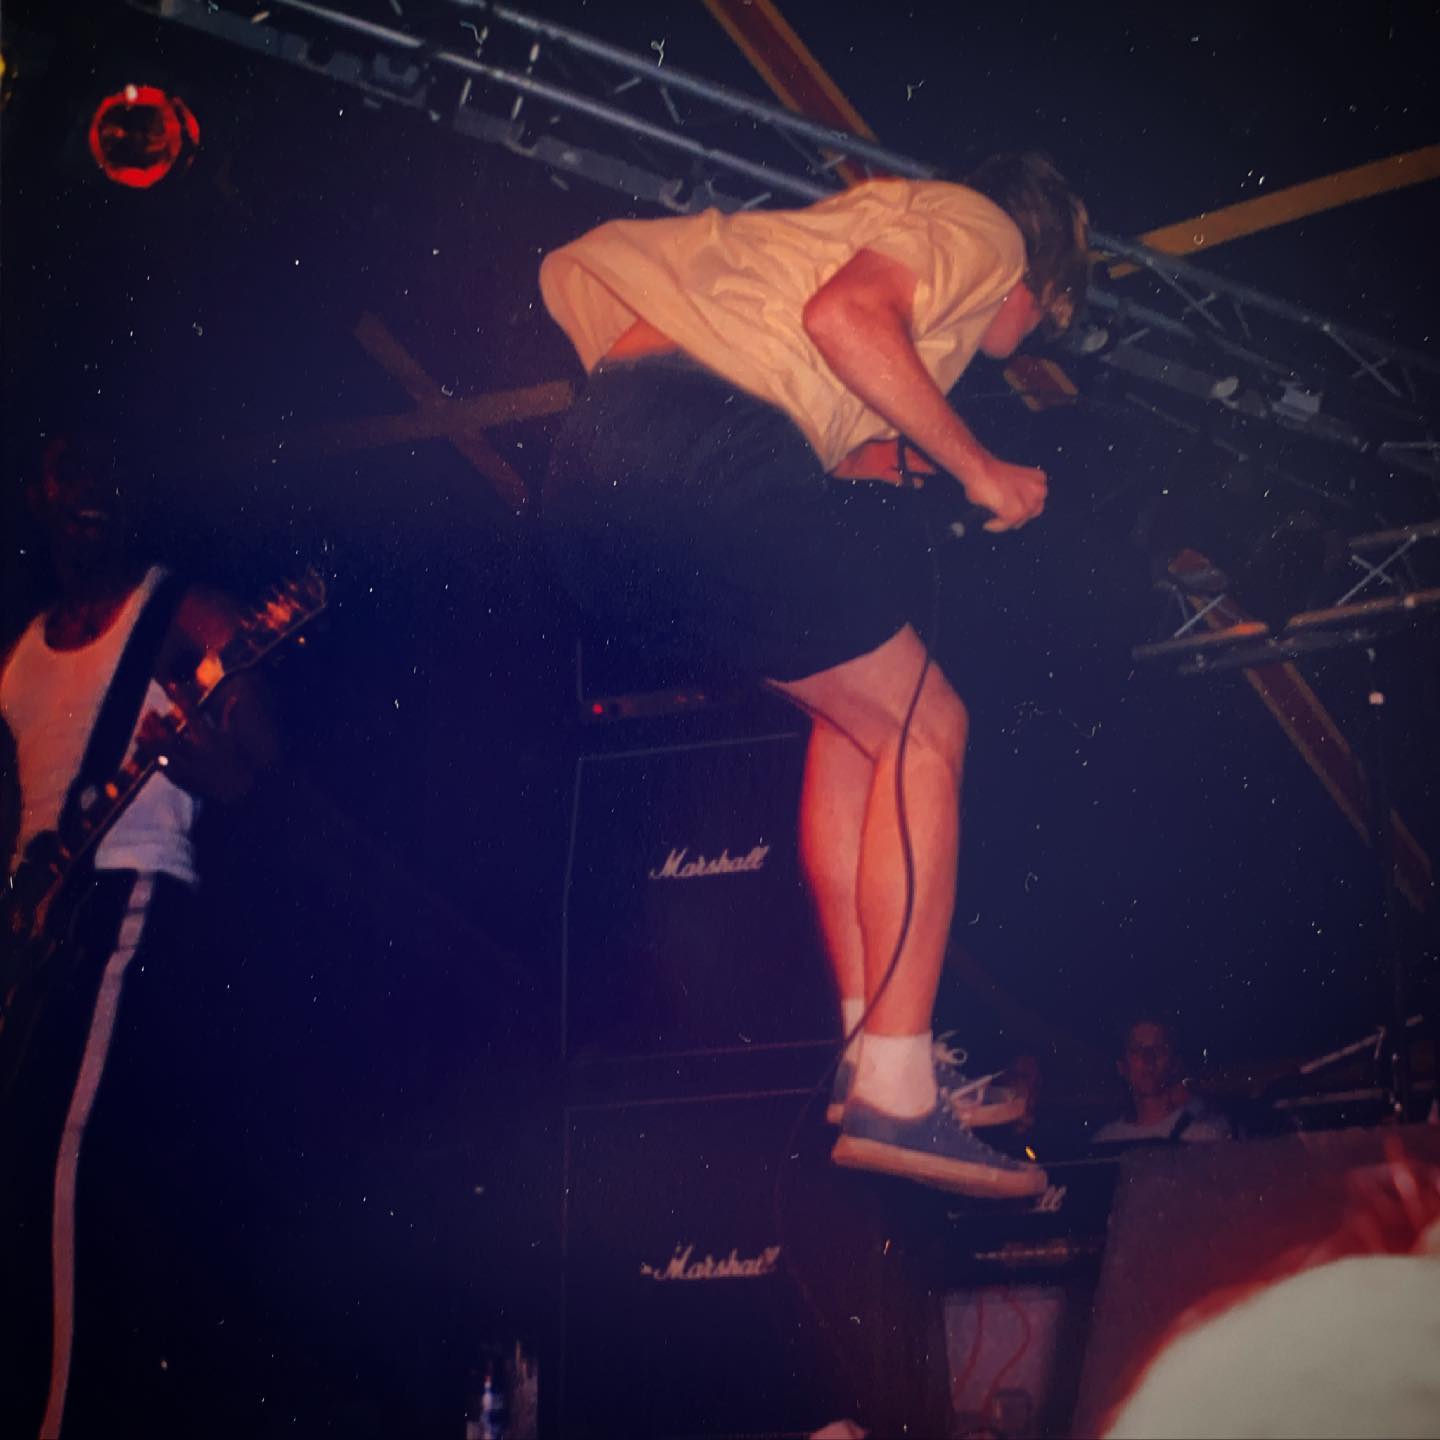 Battery - Frozenland Fest, Leeuwarden (NL) - 5/6 June 1998 #straightedge #hardcore #punkrock @batteryhardcore #gigpic by @twentylandcrew